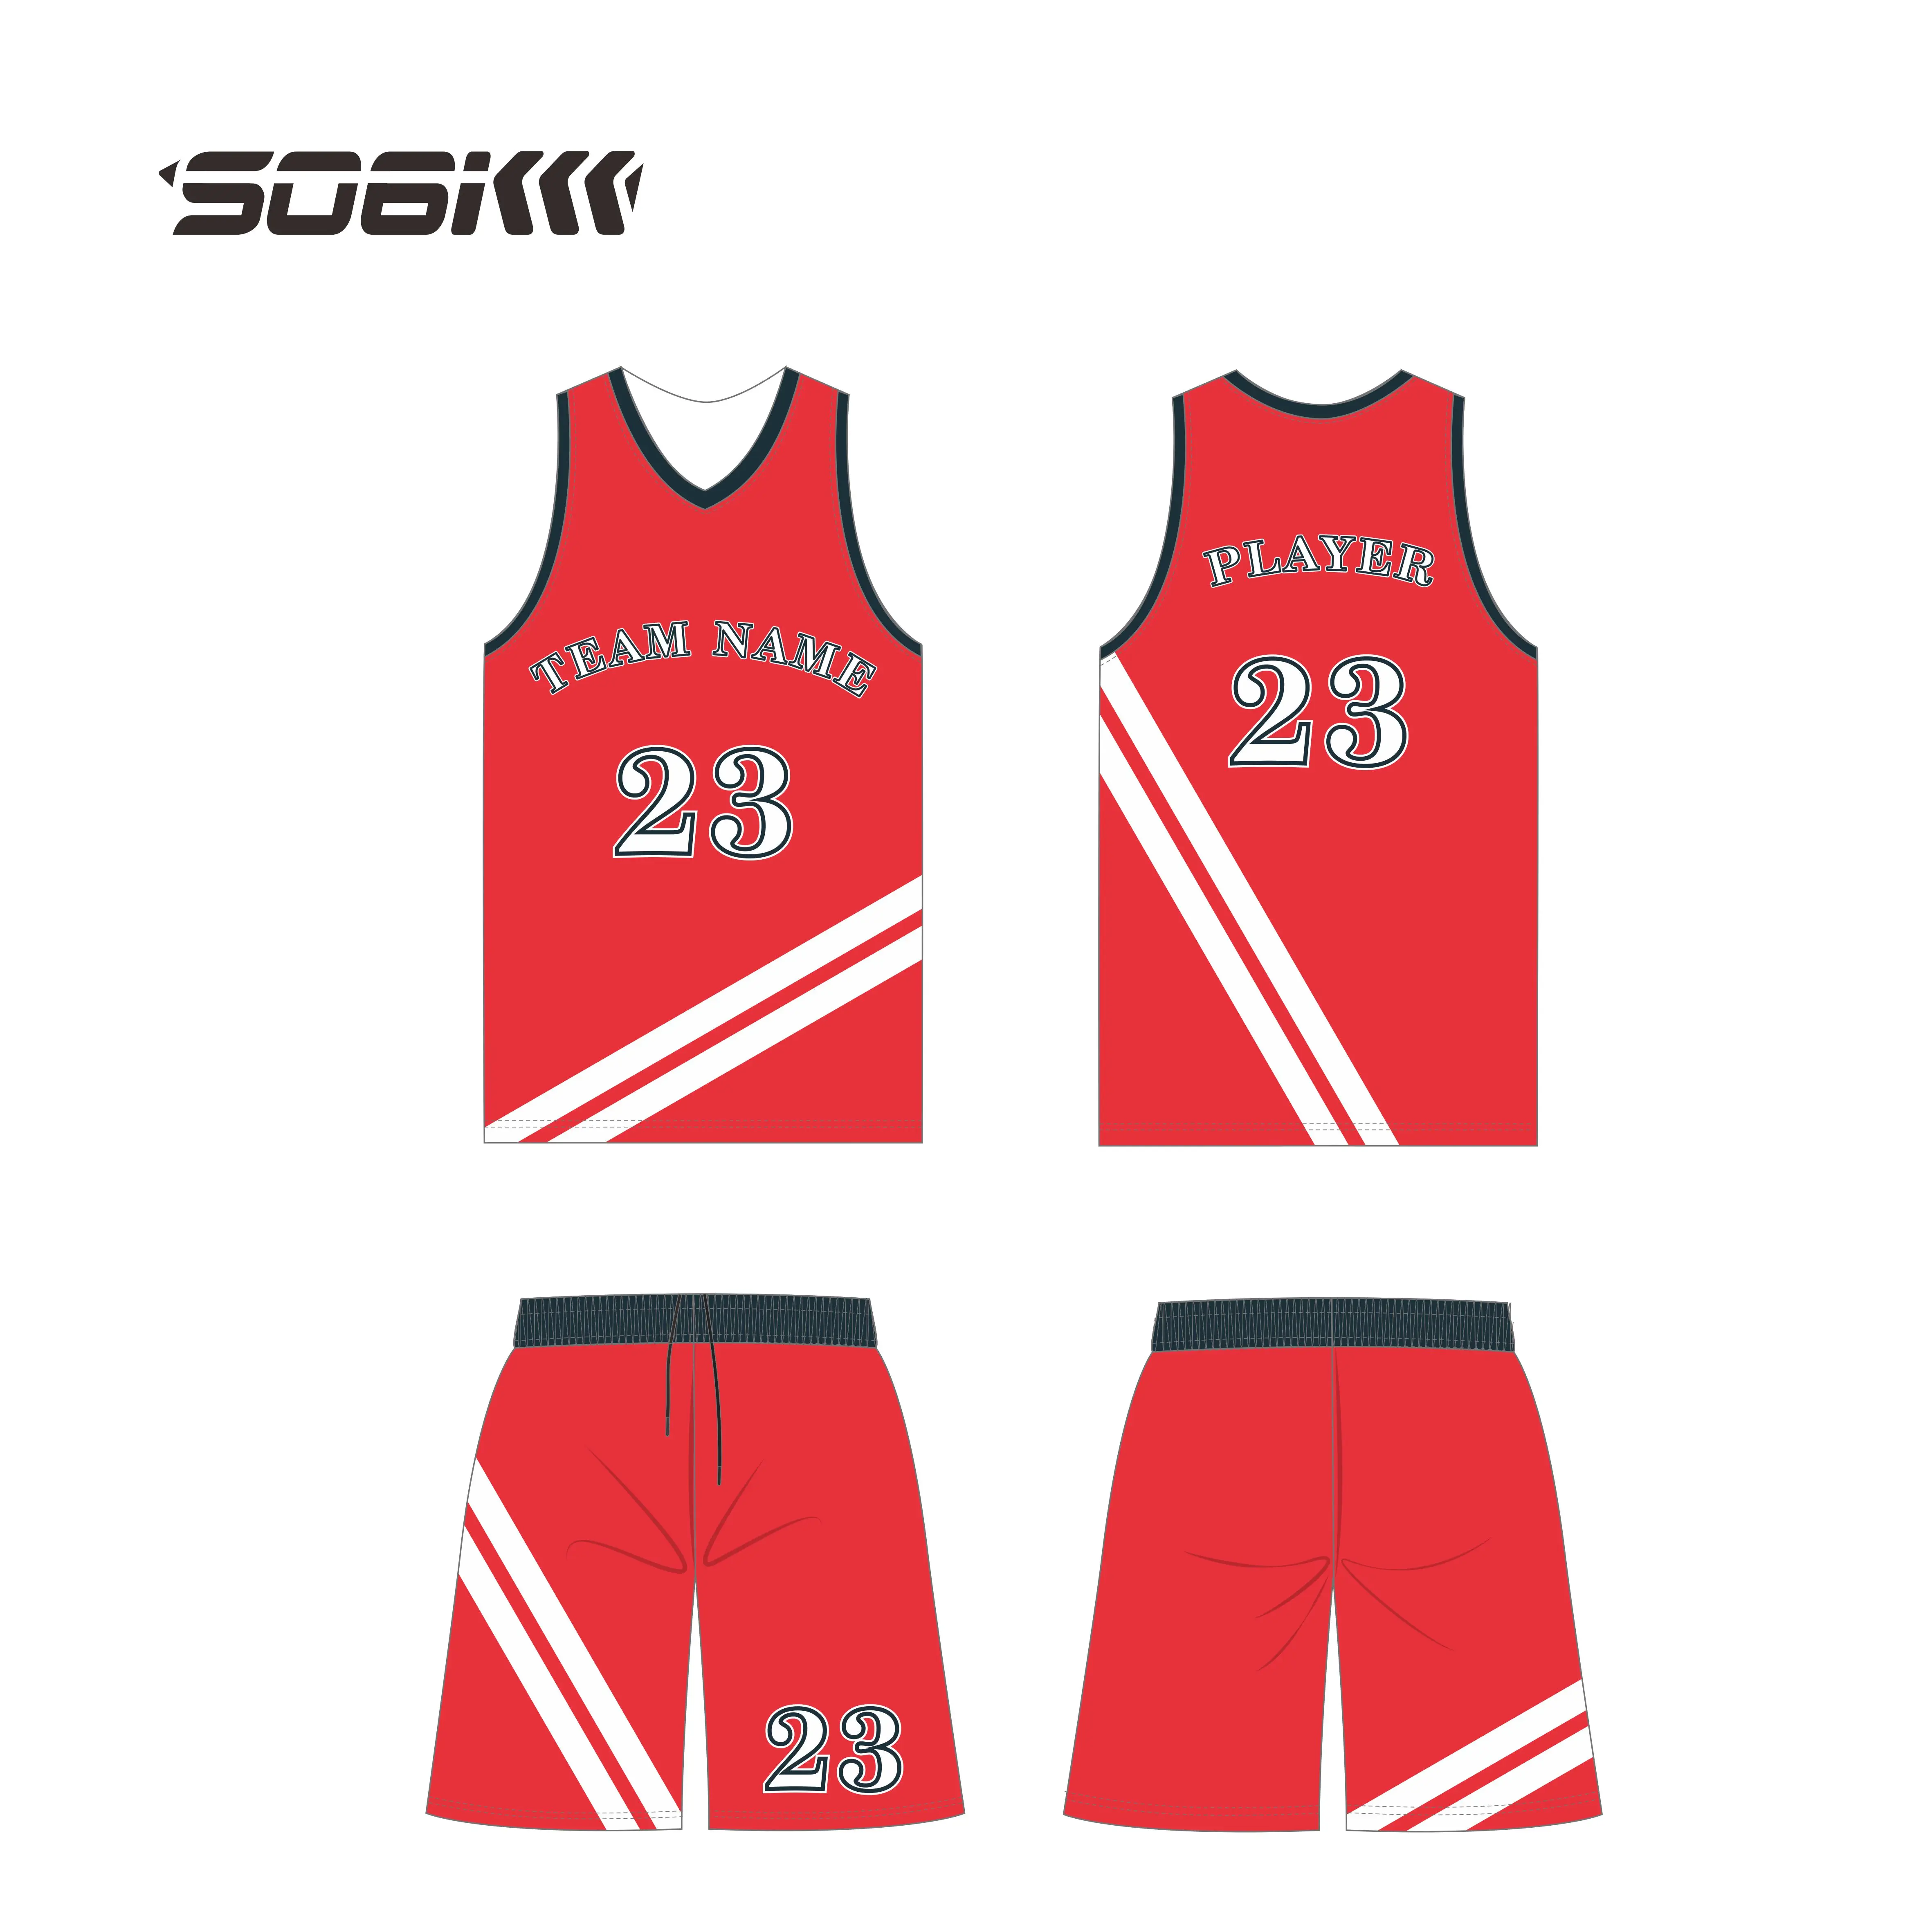 免费设计批发篮球球衣与名称红色篮球球衣